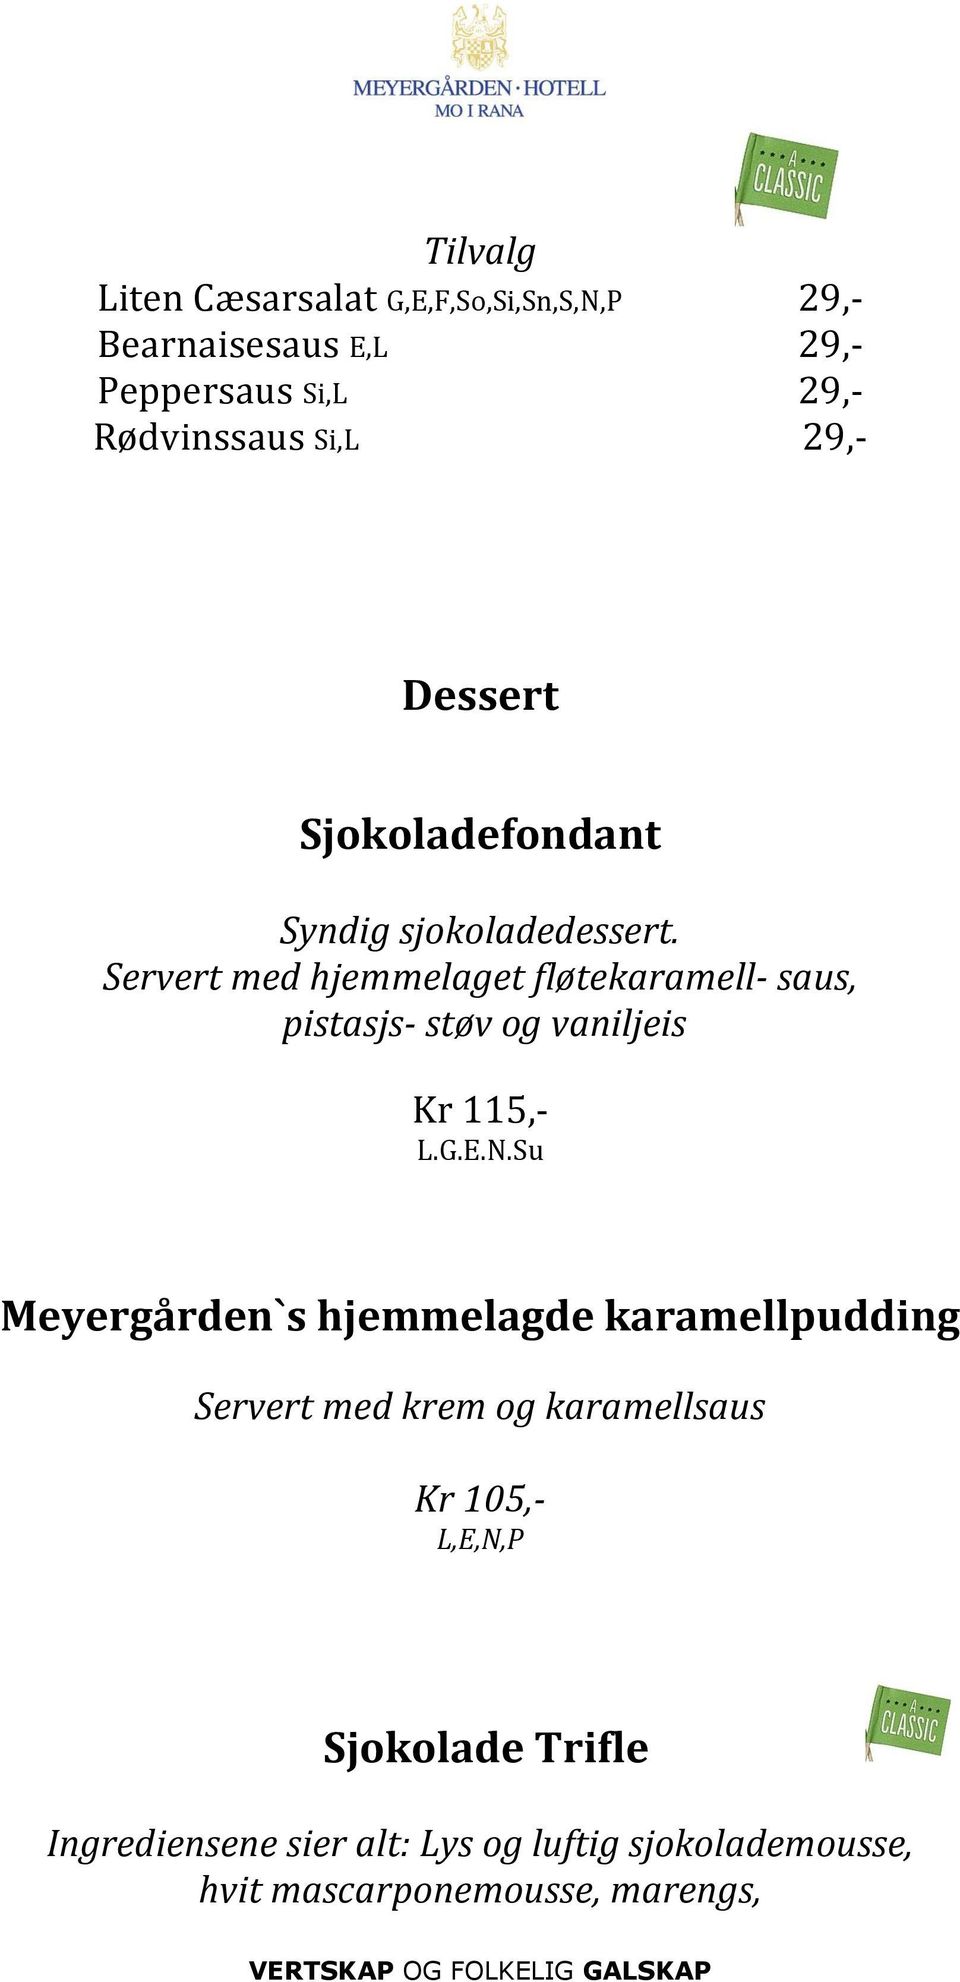 Servert med hjemmelaget fløtekaramell- saus, pistasjs- støv og vaniljeis Kr 115,- L.G.E.N.